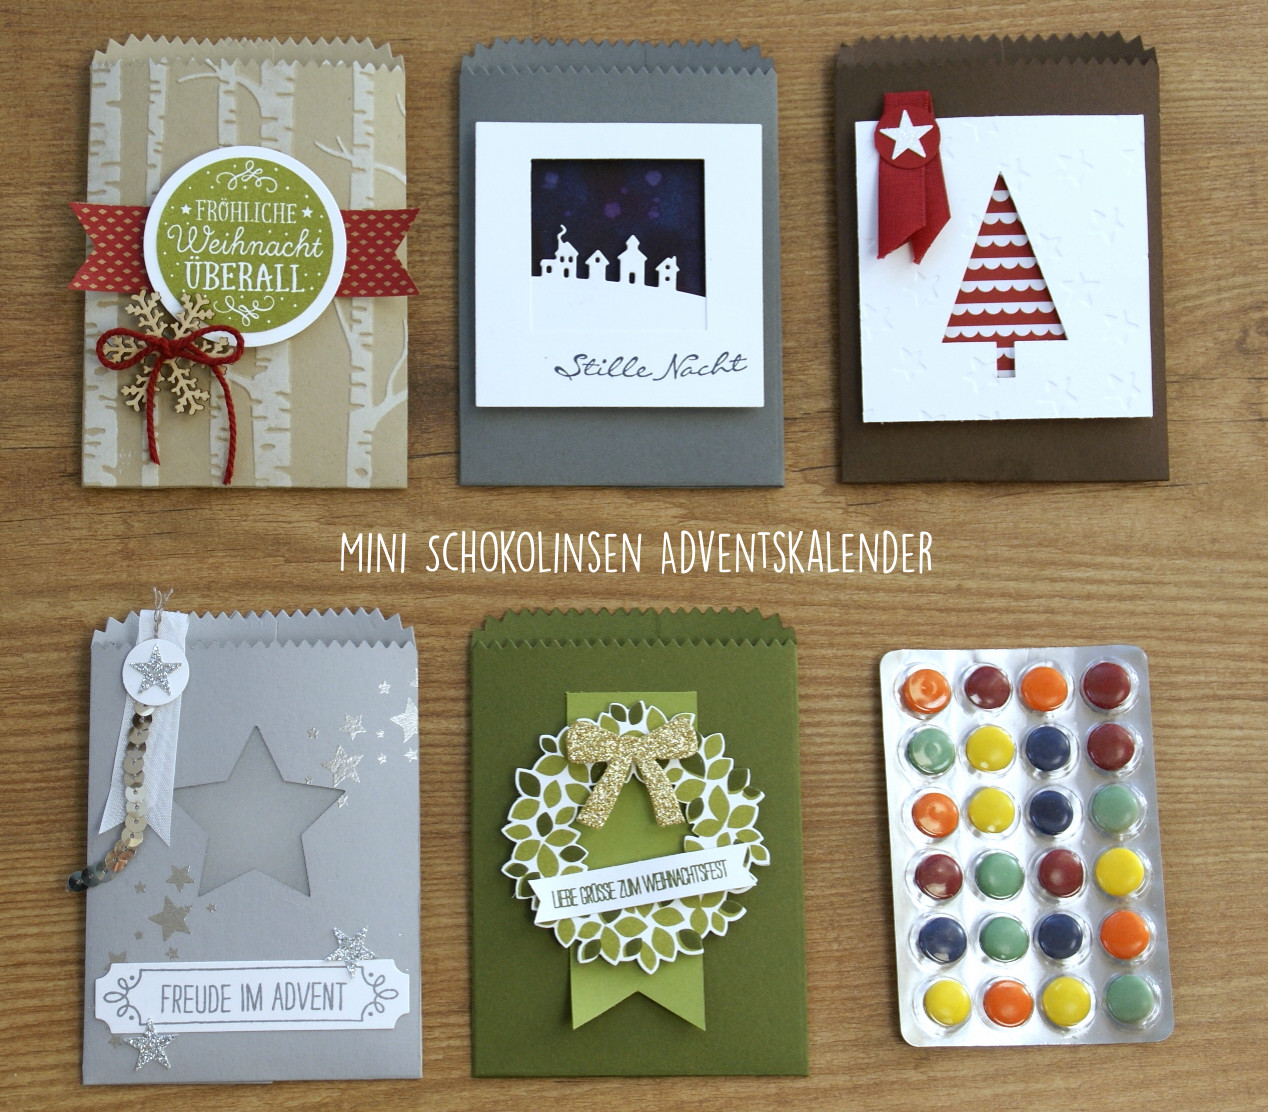 Mini Geschenke Adventskalender
 Verpackungen für Mini Schokolinsen Adventskalender